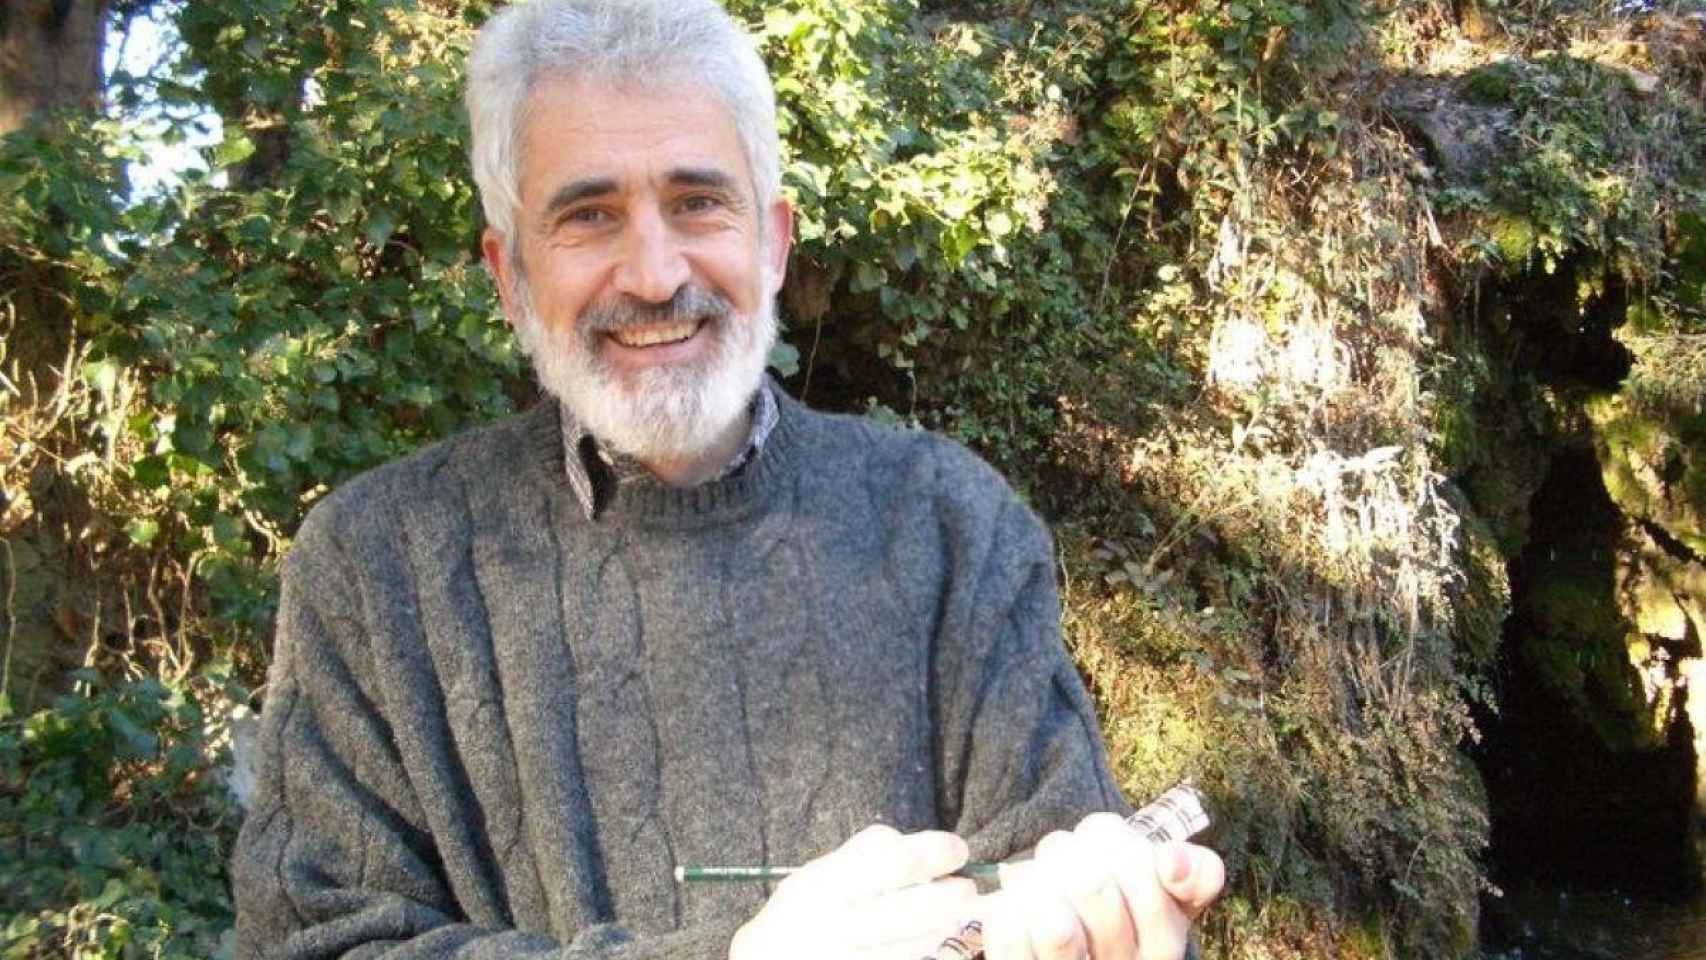 El dibujante Josep Lluís Martínez Picañol, 'Picanyol', ha muerto a los 73 años / TWITTER